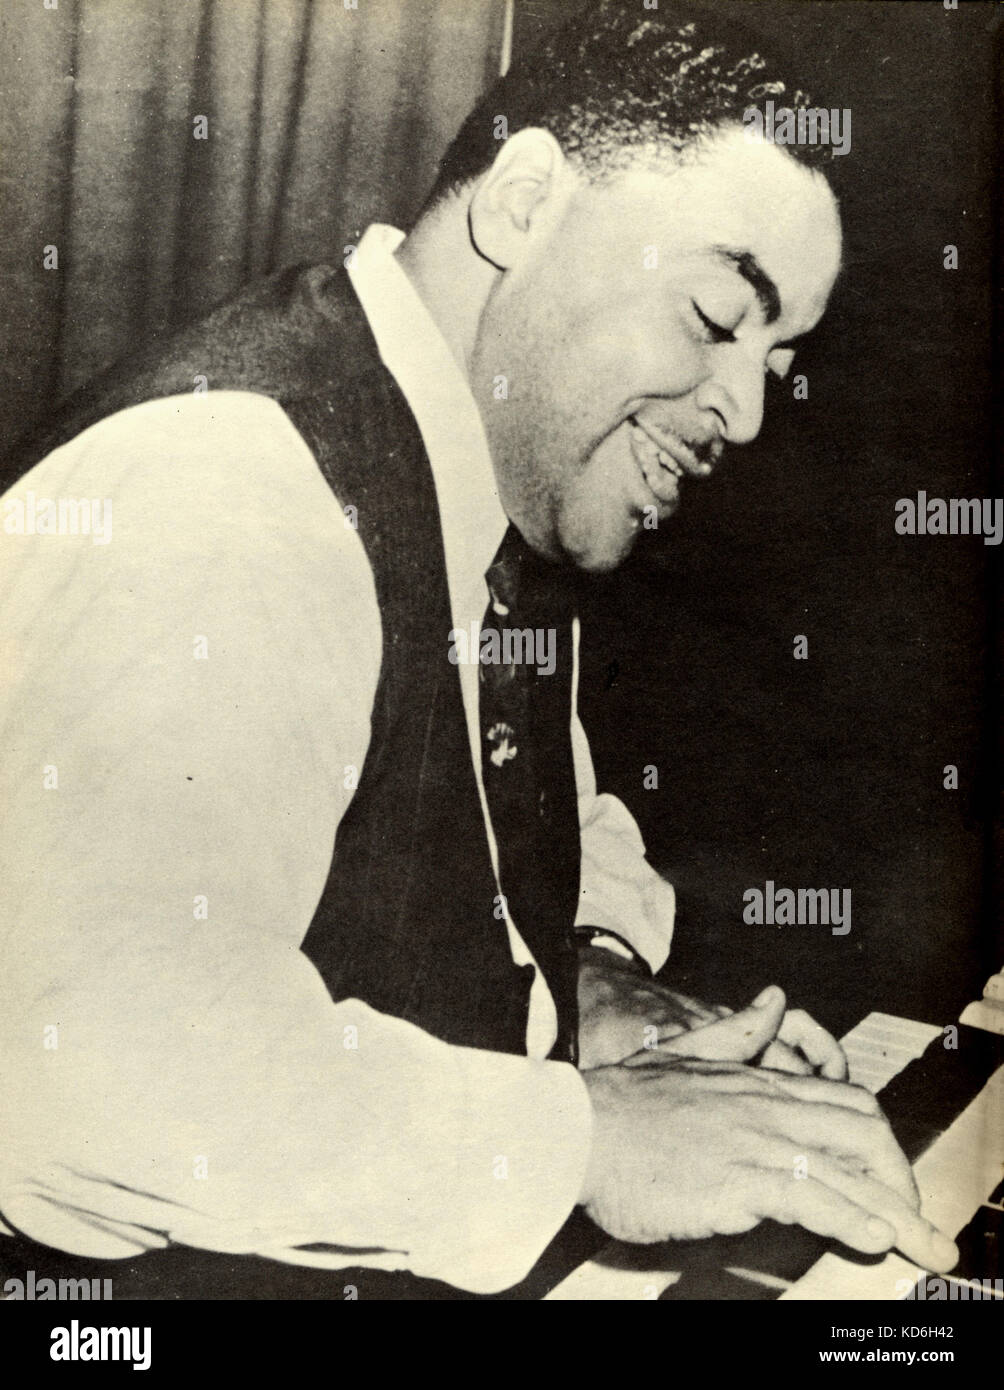 Fats Waller an der Orgel. Amerikanische Komponist, Pianist und Entertainer (1904-1943). Stockfoto